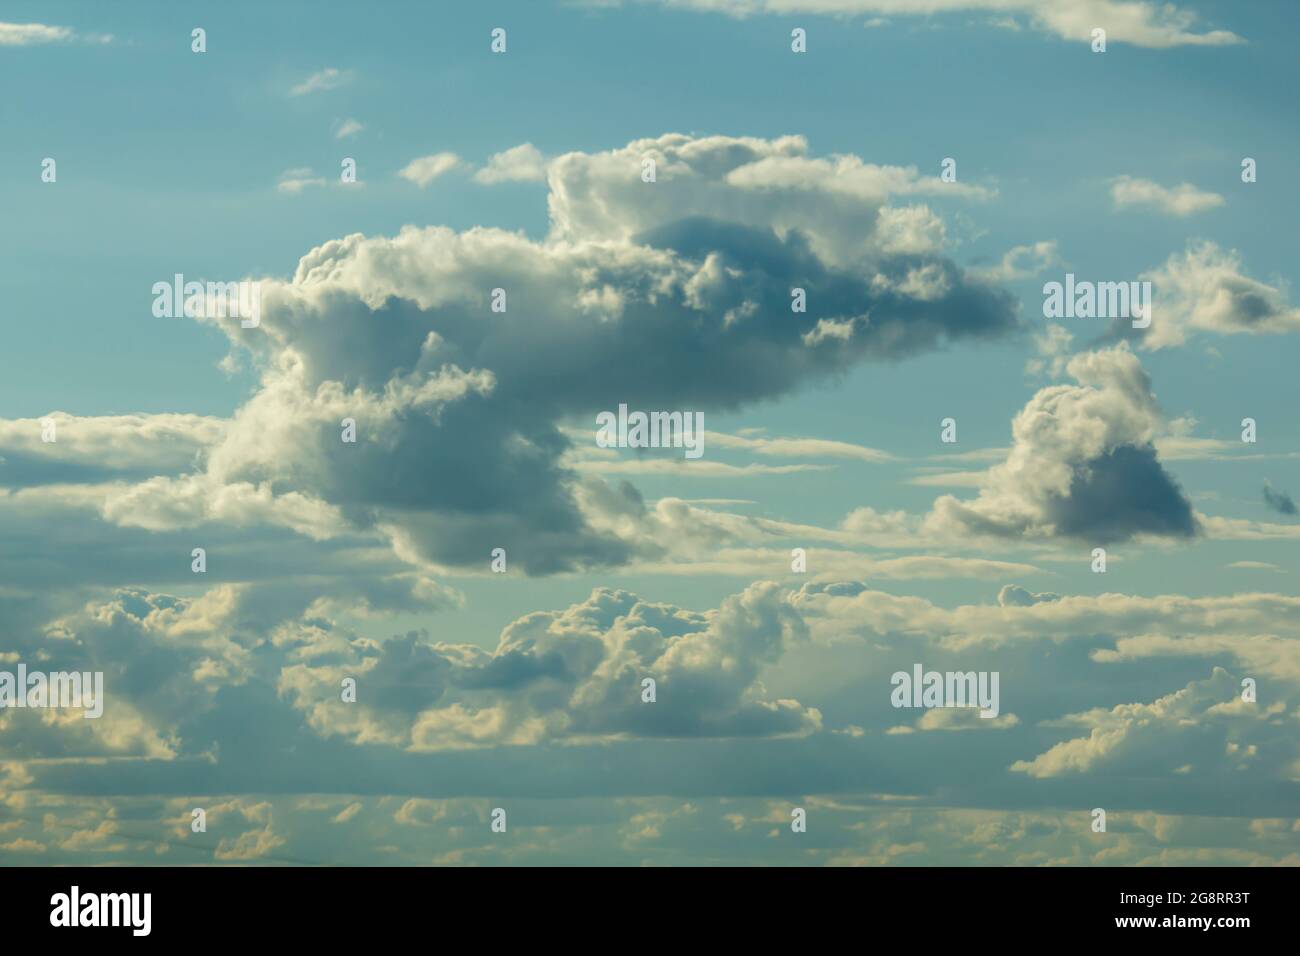 Nuages bleu clair illuminés par le soleil. Le concept de voyage aérien dans le monde entier. Banque D'Images